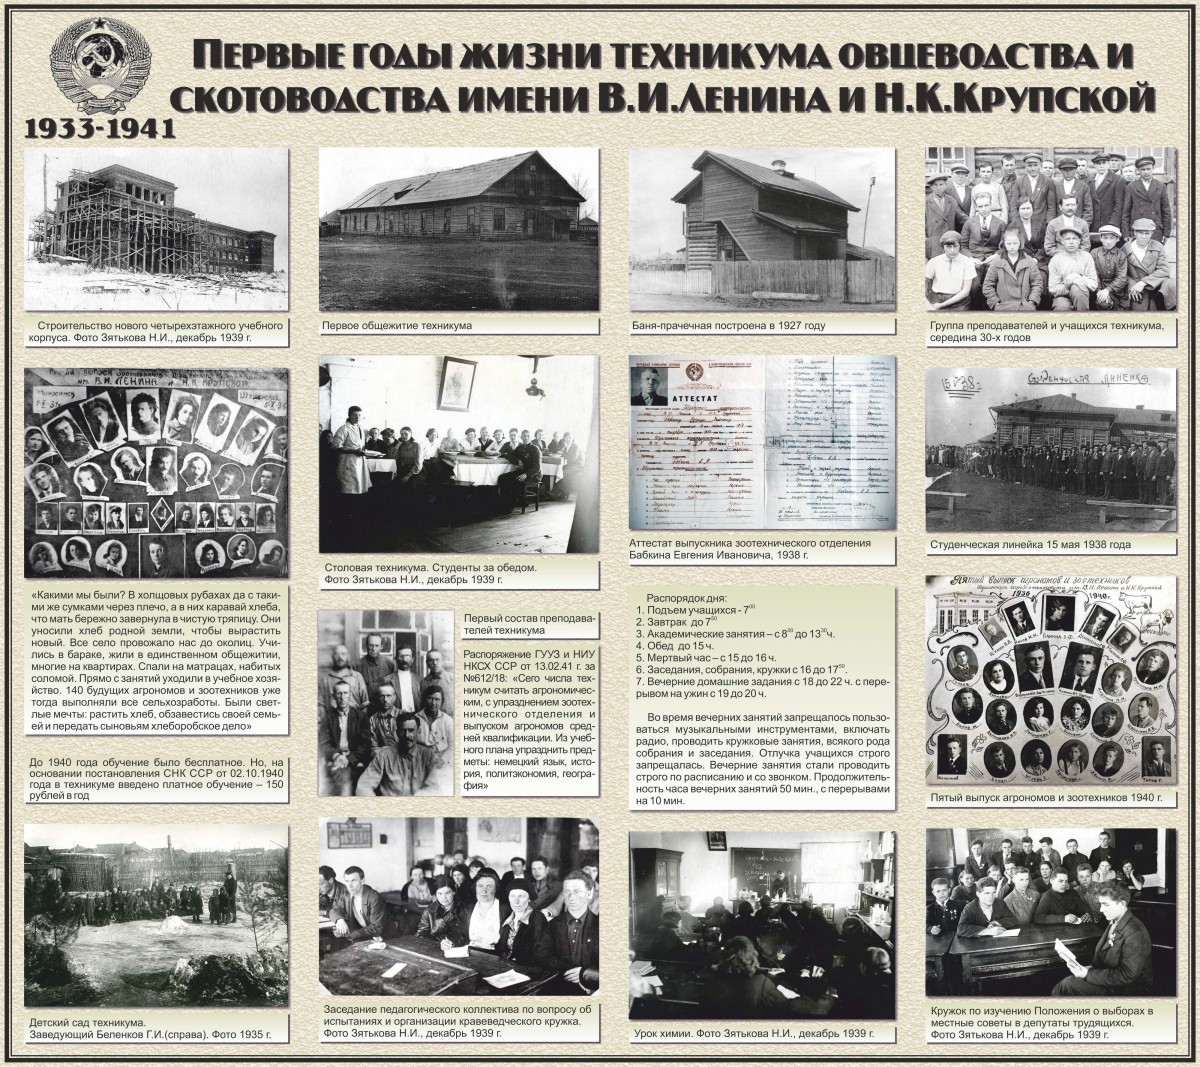 1933-1941 г.г. Первые годы жизни техникума